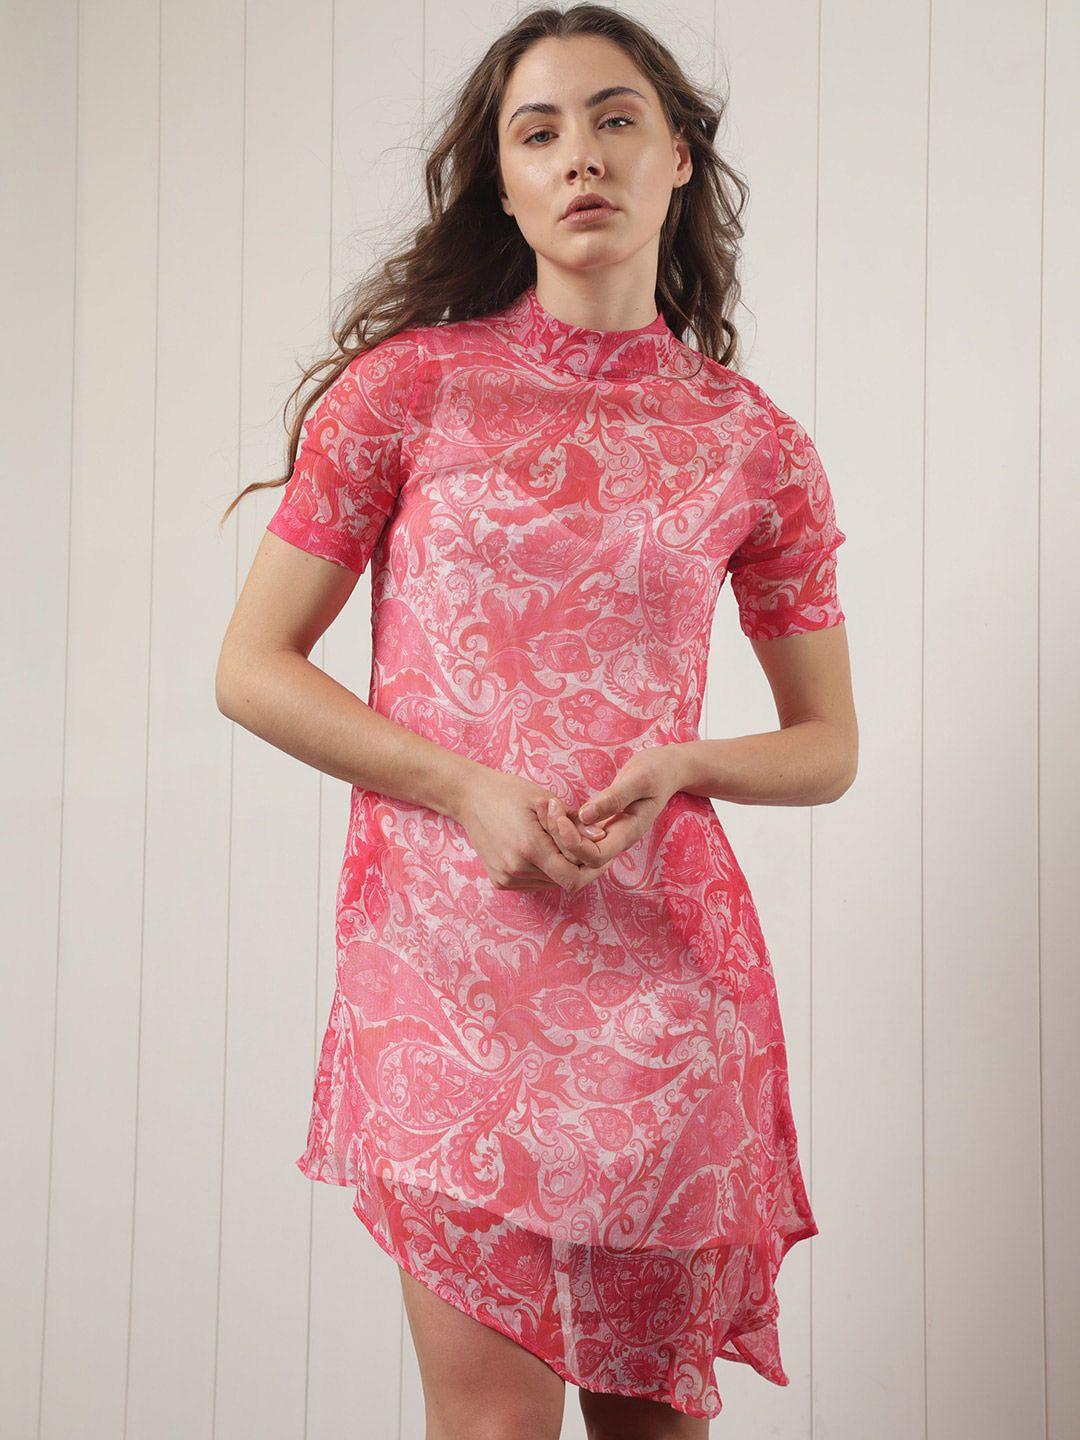 rareism floral print a-line dress